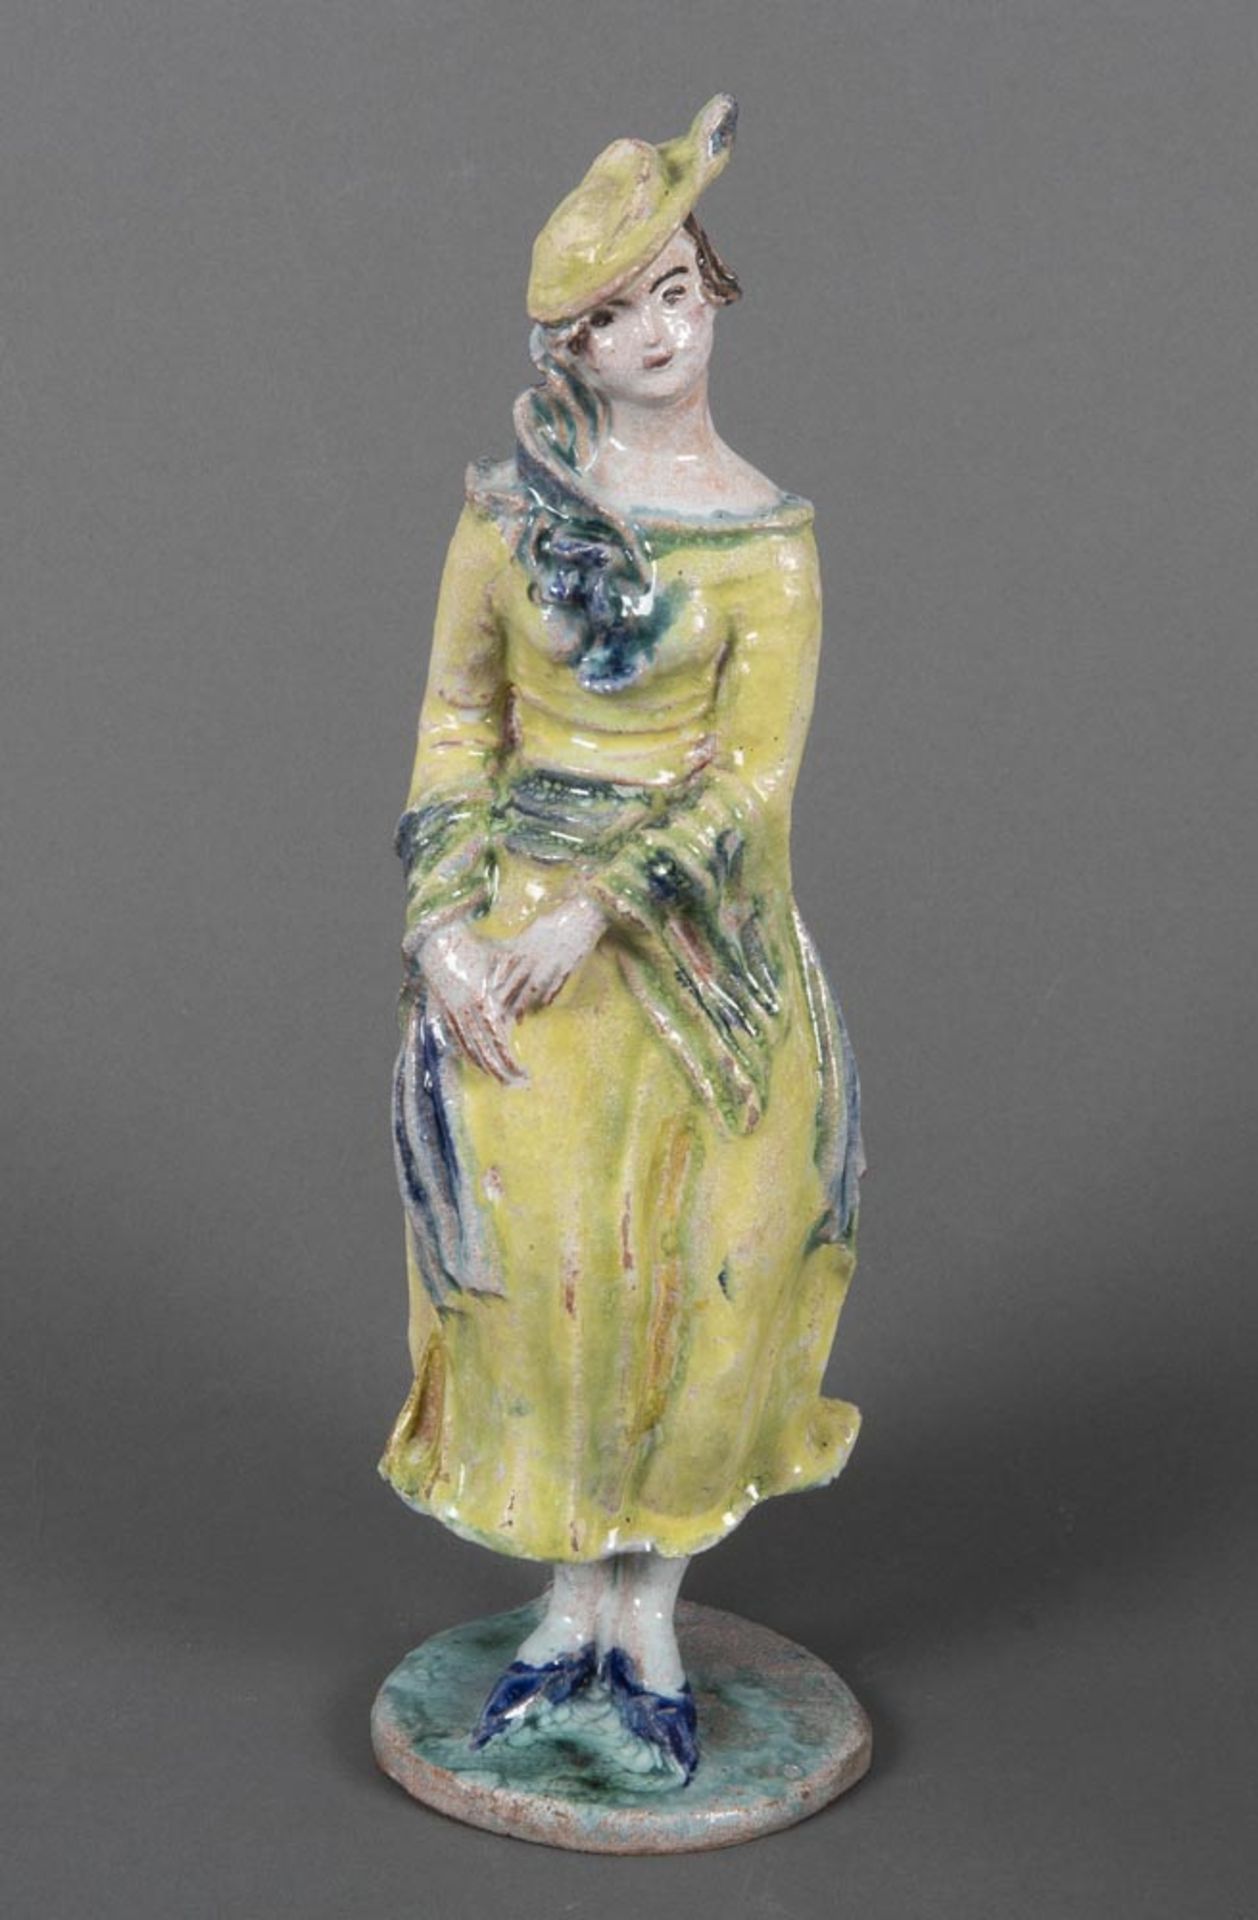 Vally Wieselthier (1895-1945). Stehendes Mädchen. Keramik, bunt bemalt, ohne Marke, Wiener